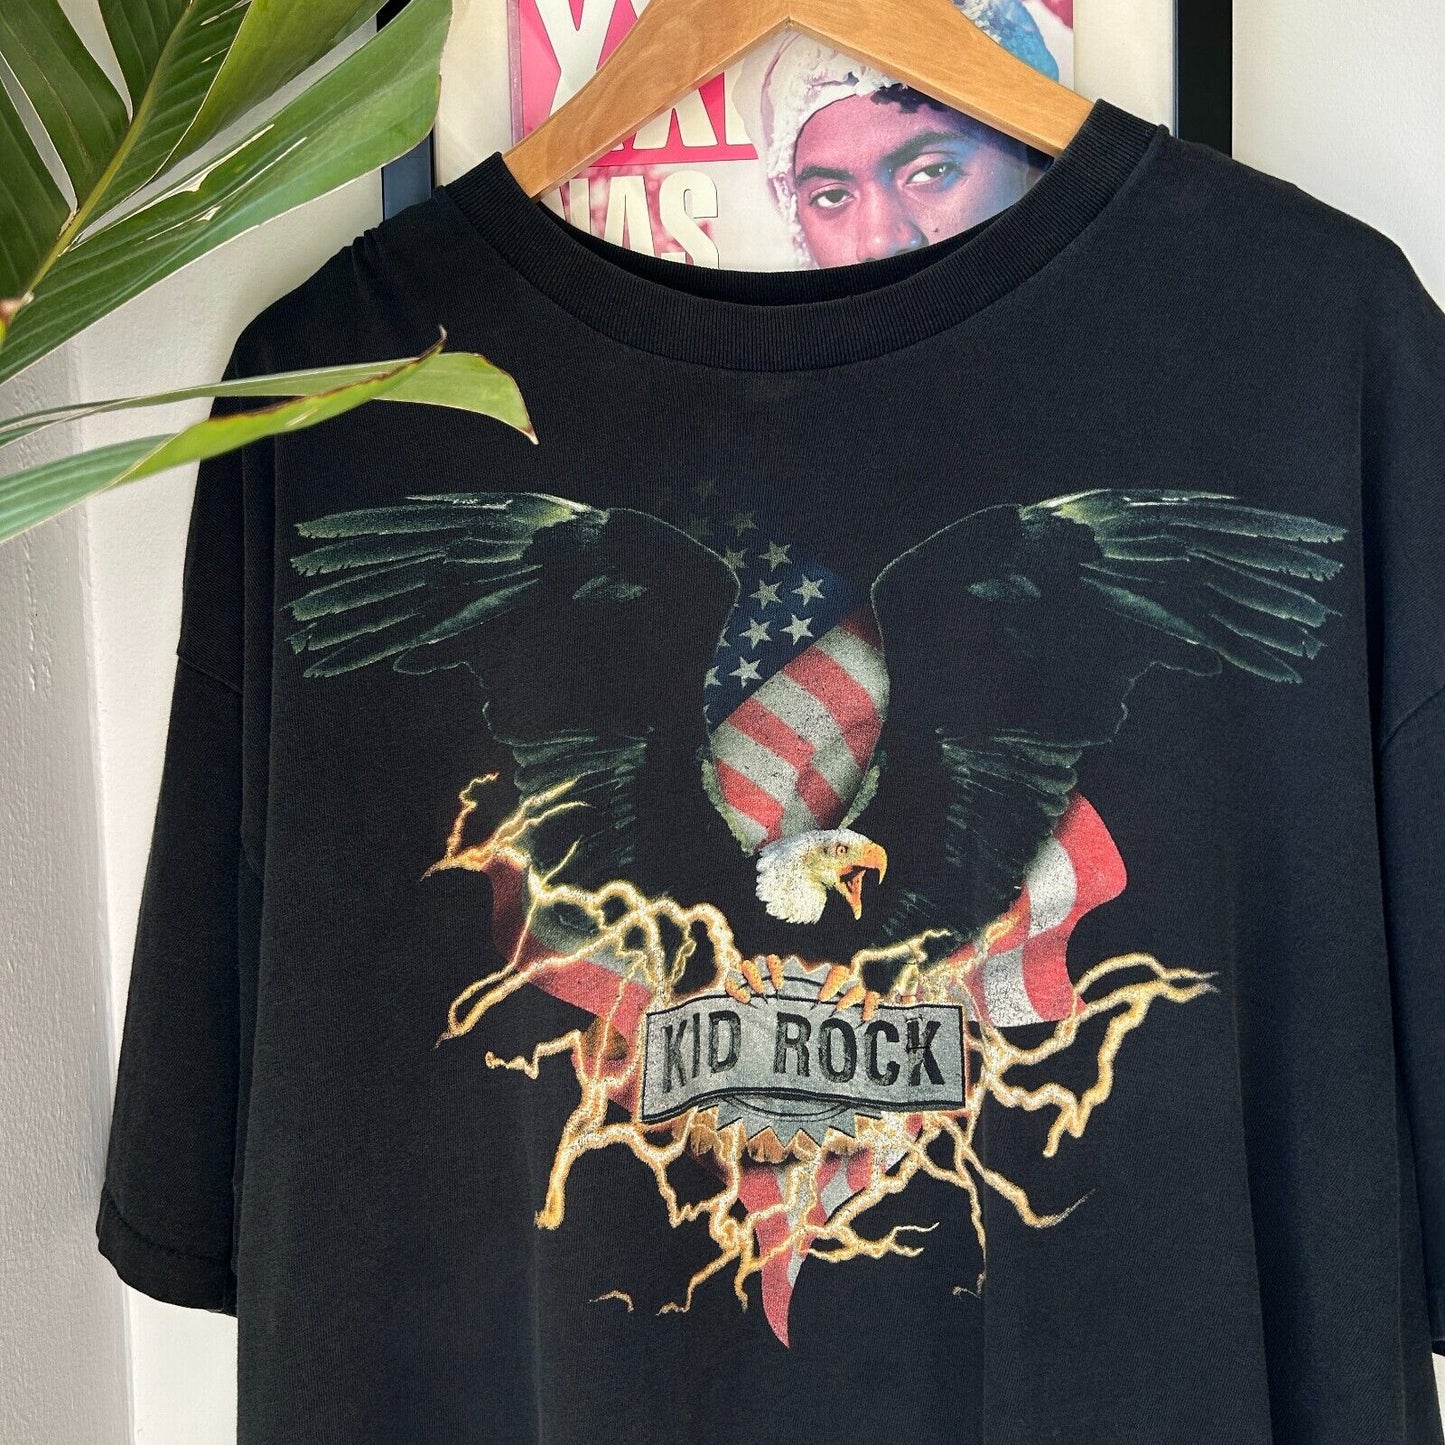 VINTAGE 2000 | KID ROCK Live Tour Band T-Shirt sz XL Adult